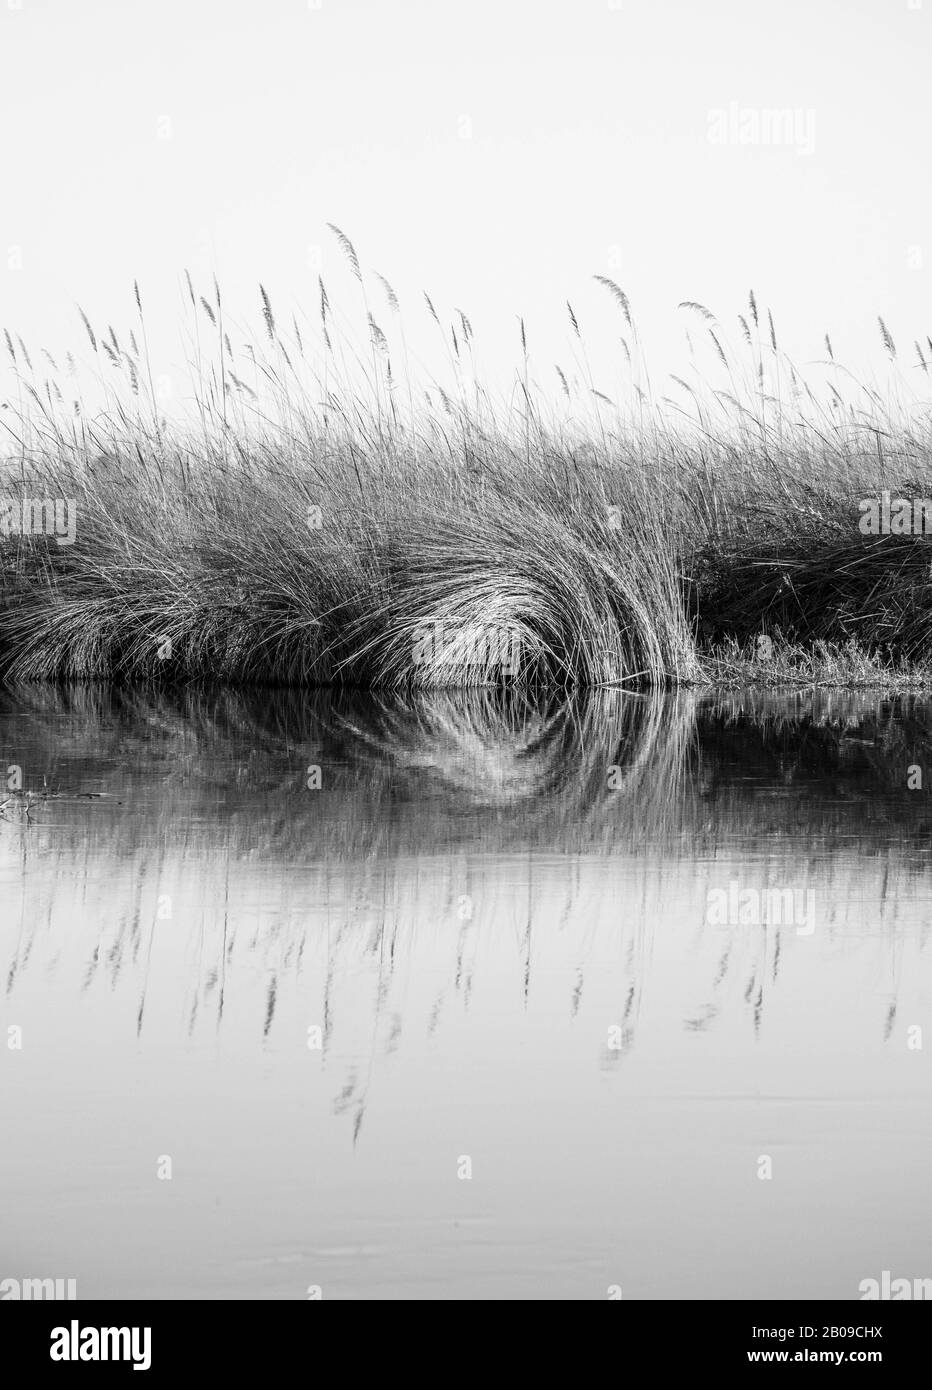 Lac et paysage fluvial. Réflexion des récifs dans l'eau, le moocnochrome et l'image géométrique, prise dans le delta de la rivière okovango, au botswana Banque D'Images